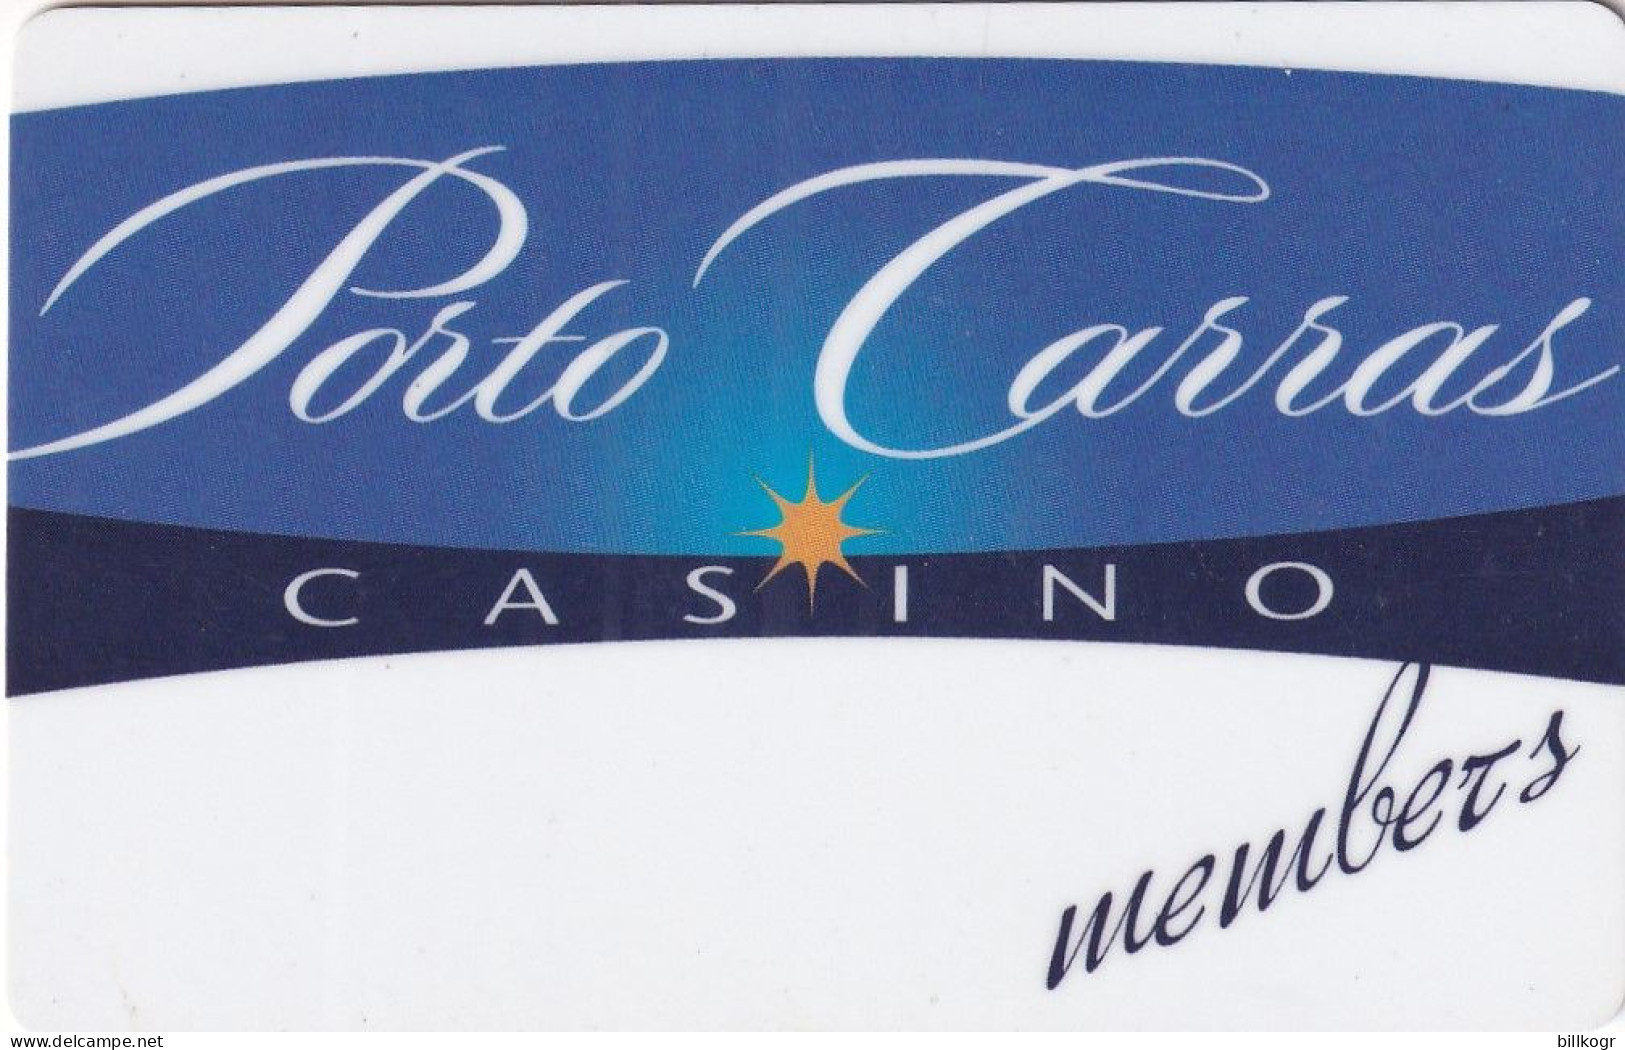 GREECE - Porto Carras, Casino Member Card, Used - Casinokaarten